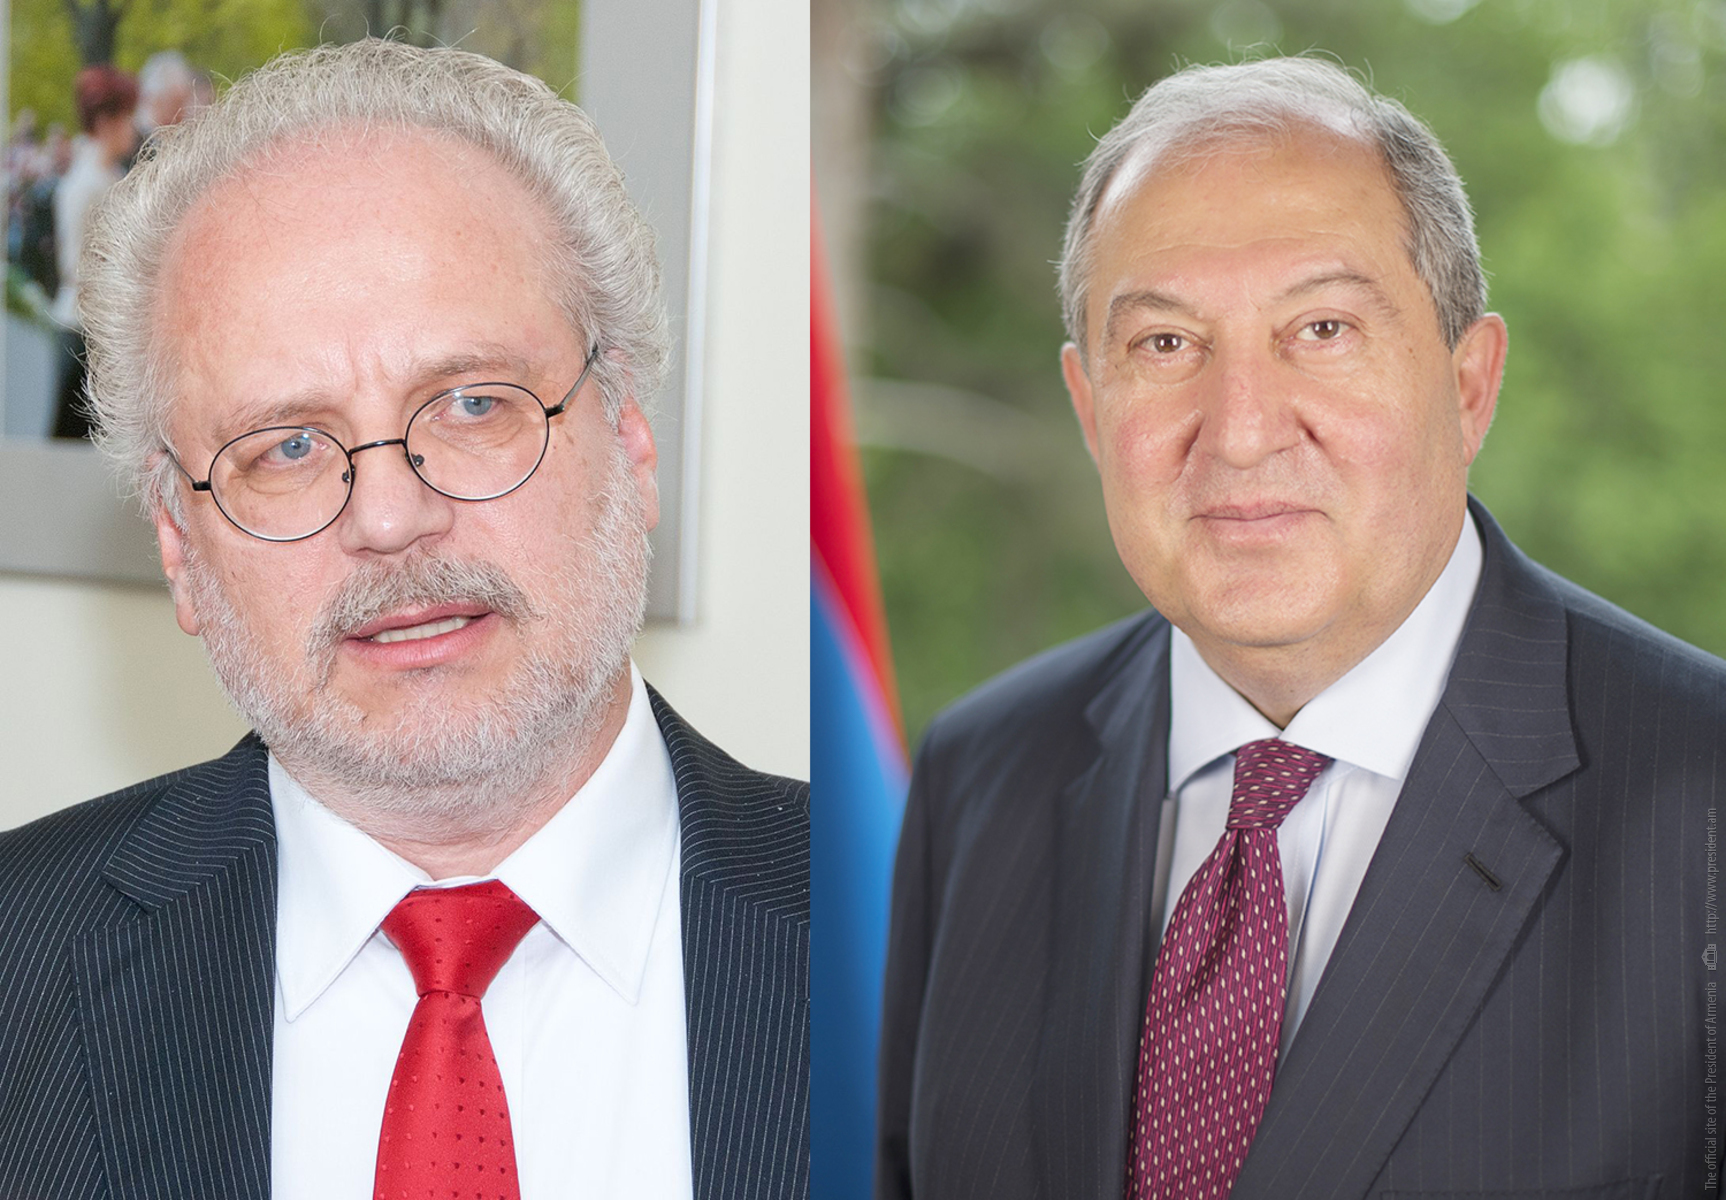 Երկու երկրները համագործակցության լուրջ ներուժ ունեն. նախագահ Արմեն Սարգսյանը հեռախոսազրույց է ունեցել Լատվիայի նախագահի հետ